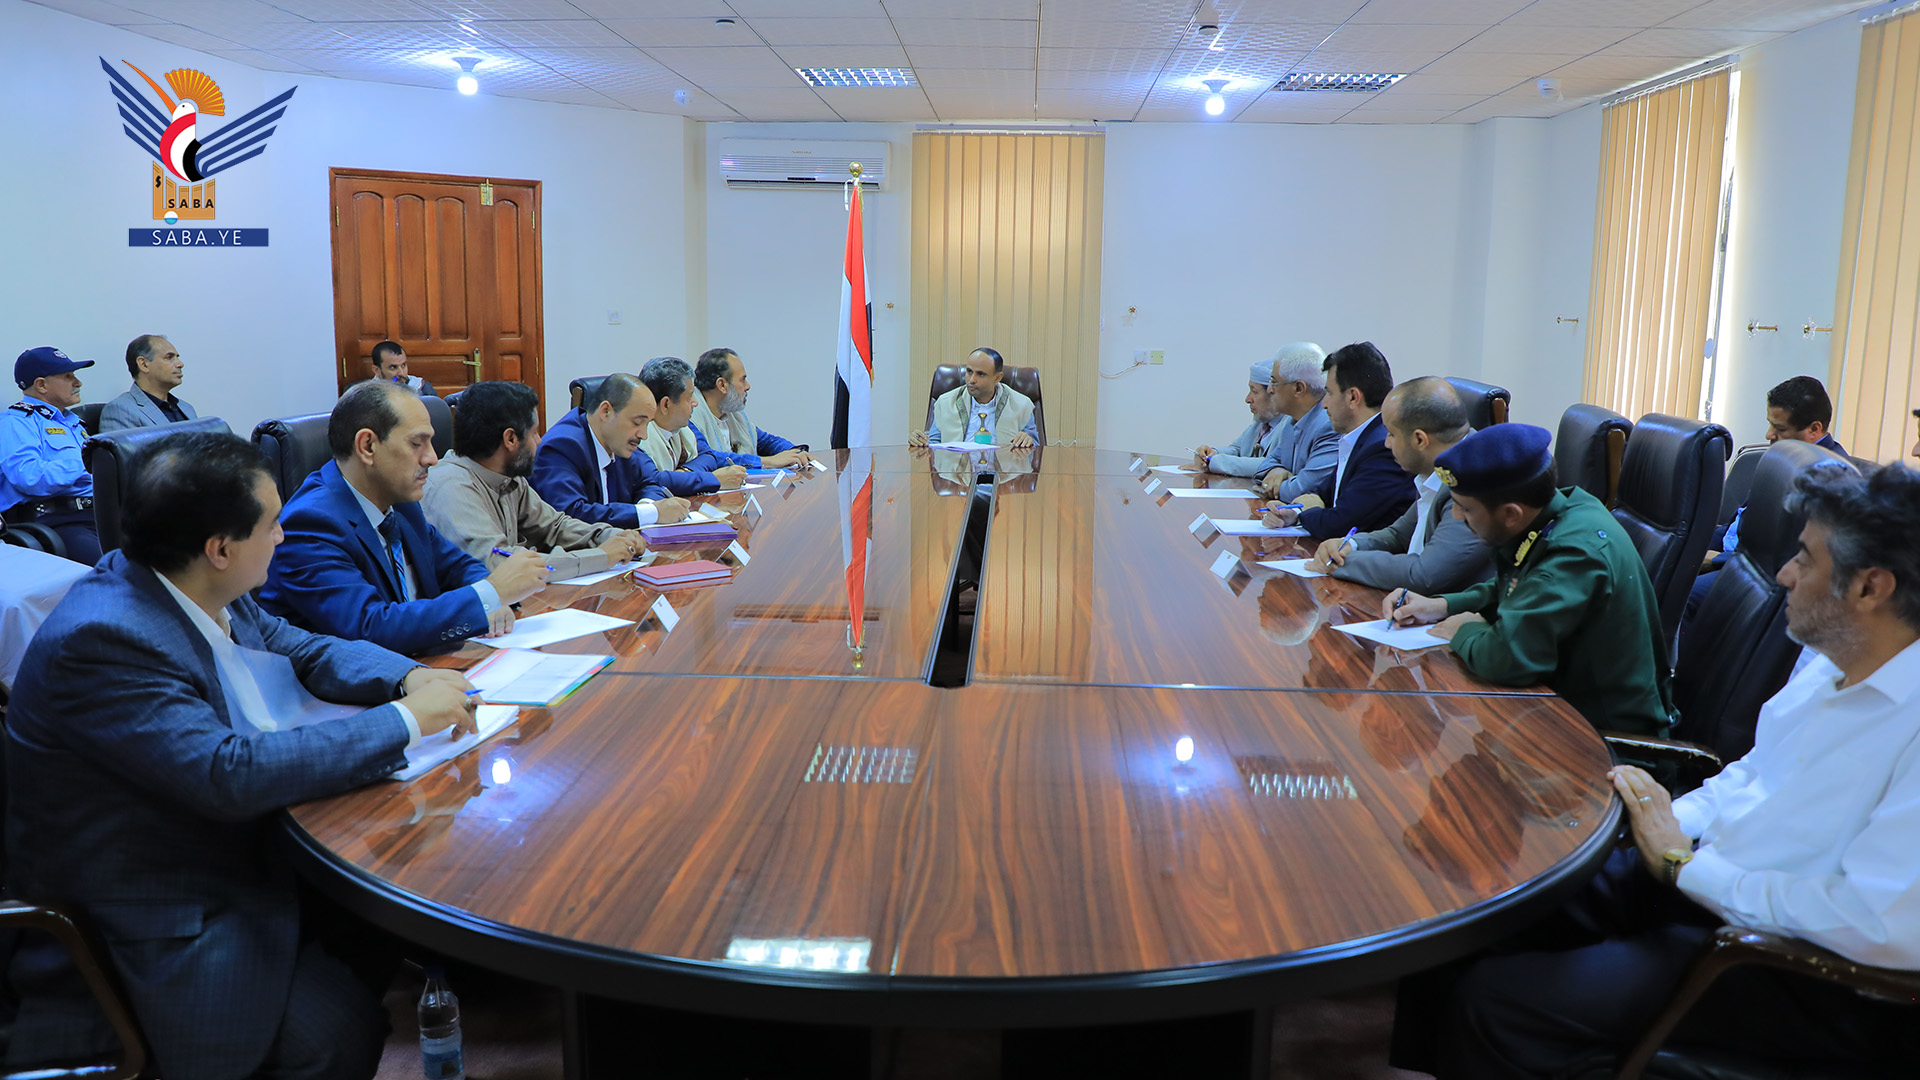  Le président Al-Mashat rencontre le bureau exécutif provincial de Dhamar